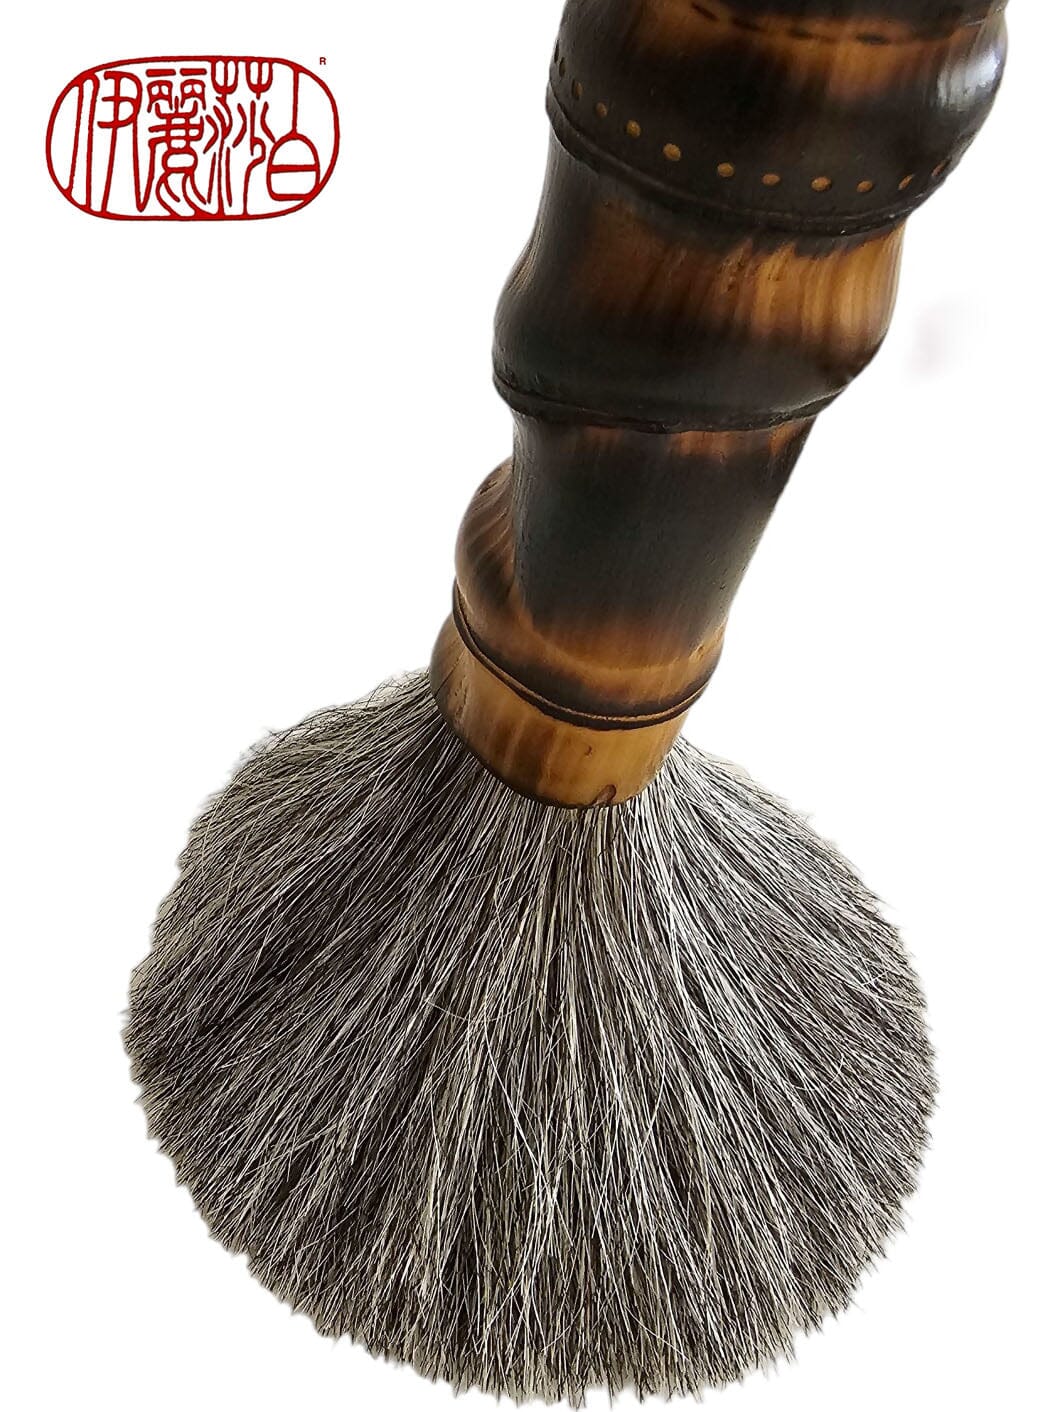 Round Shaker Style Brush Wood Handle, Horse Hair Brush Farmhouse